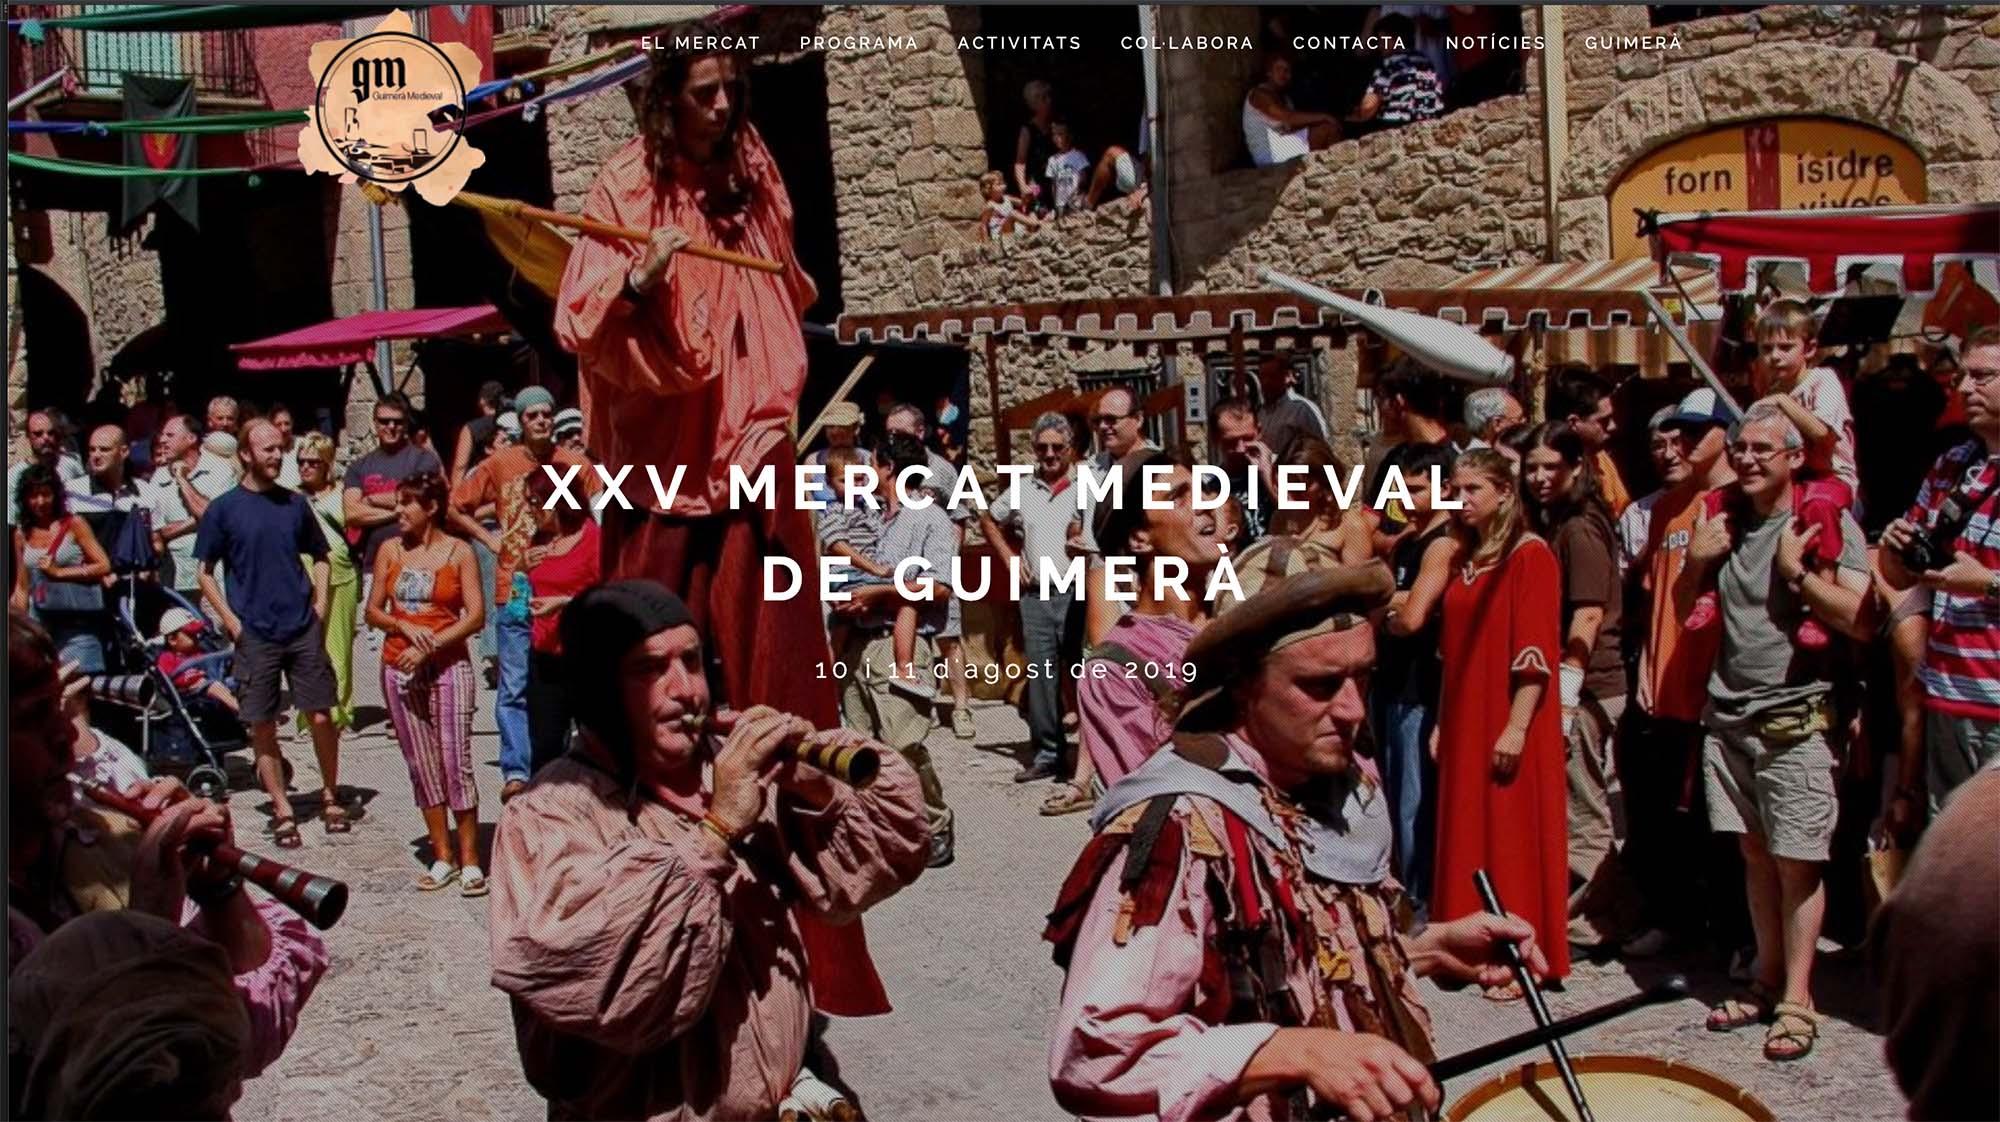 XXV Mercat Medieval de Guimerà 2019